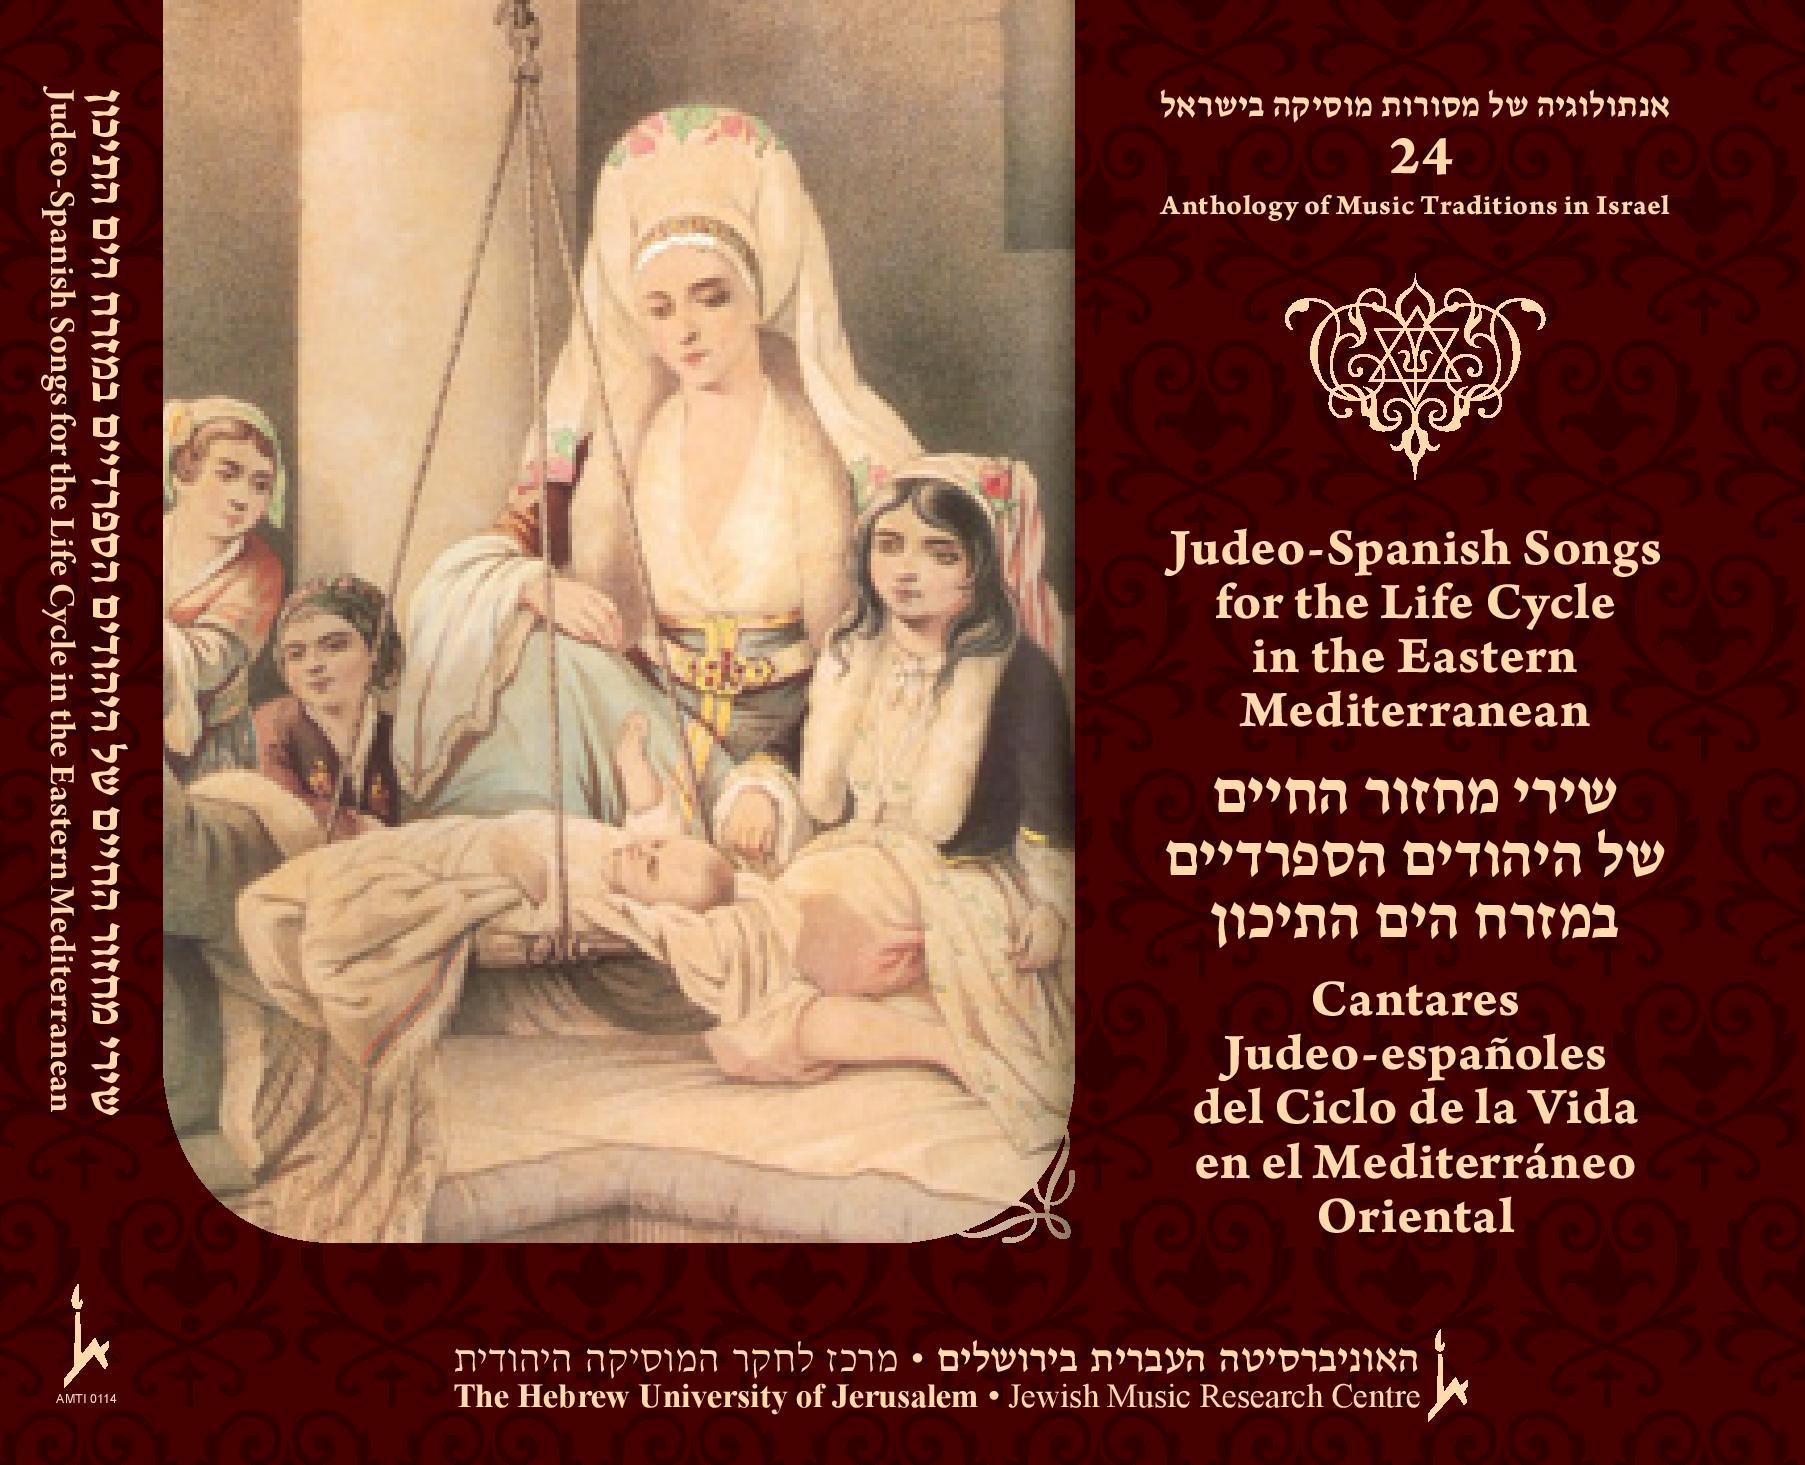 שירי מחזור החיים של היהודים הספרדיים במזרח הים התיכון